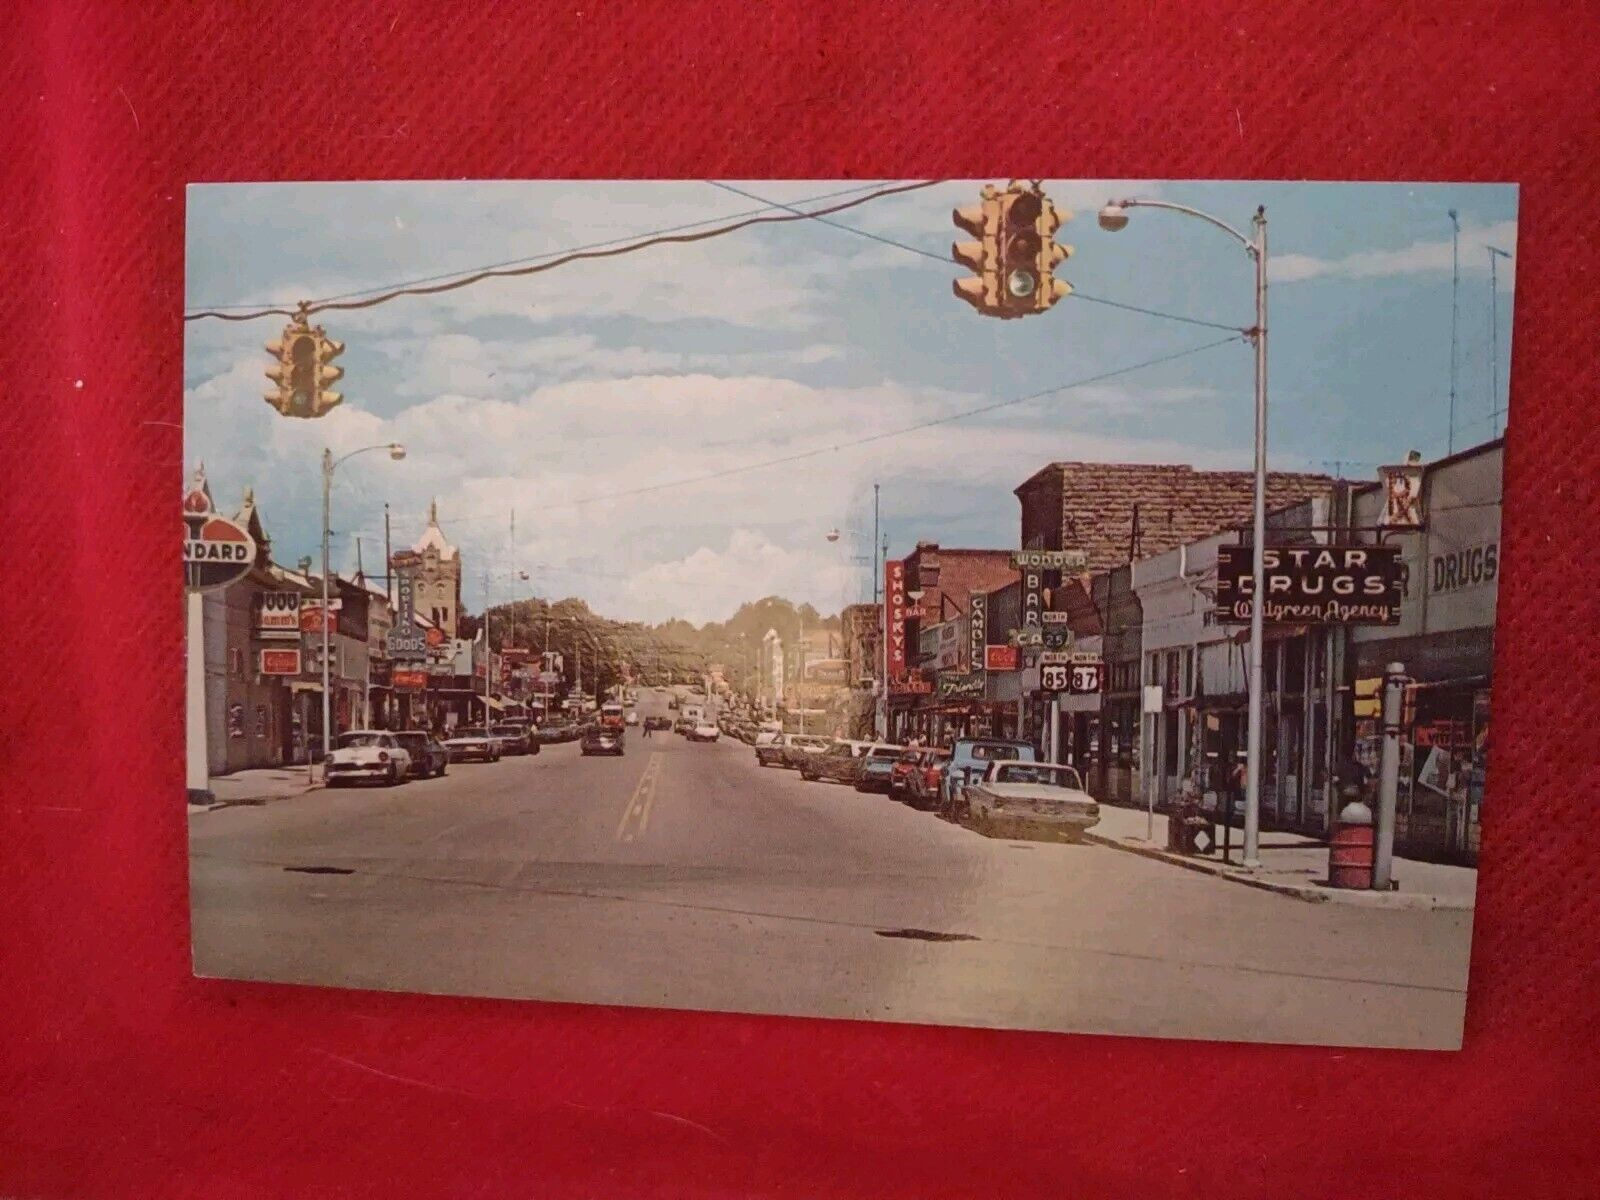 Vintage Post Card Streetview Of Walsenburg Colorado Standard Oil Star Drugs...